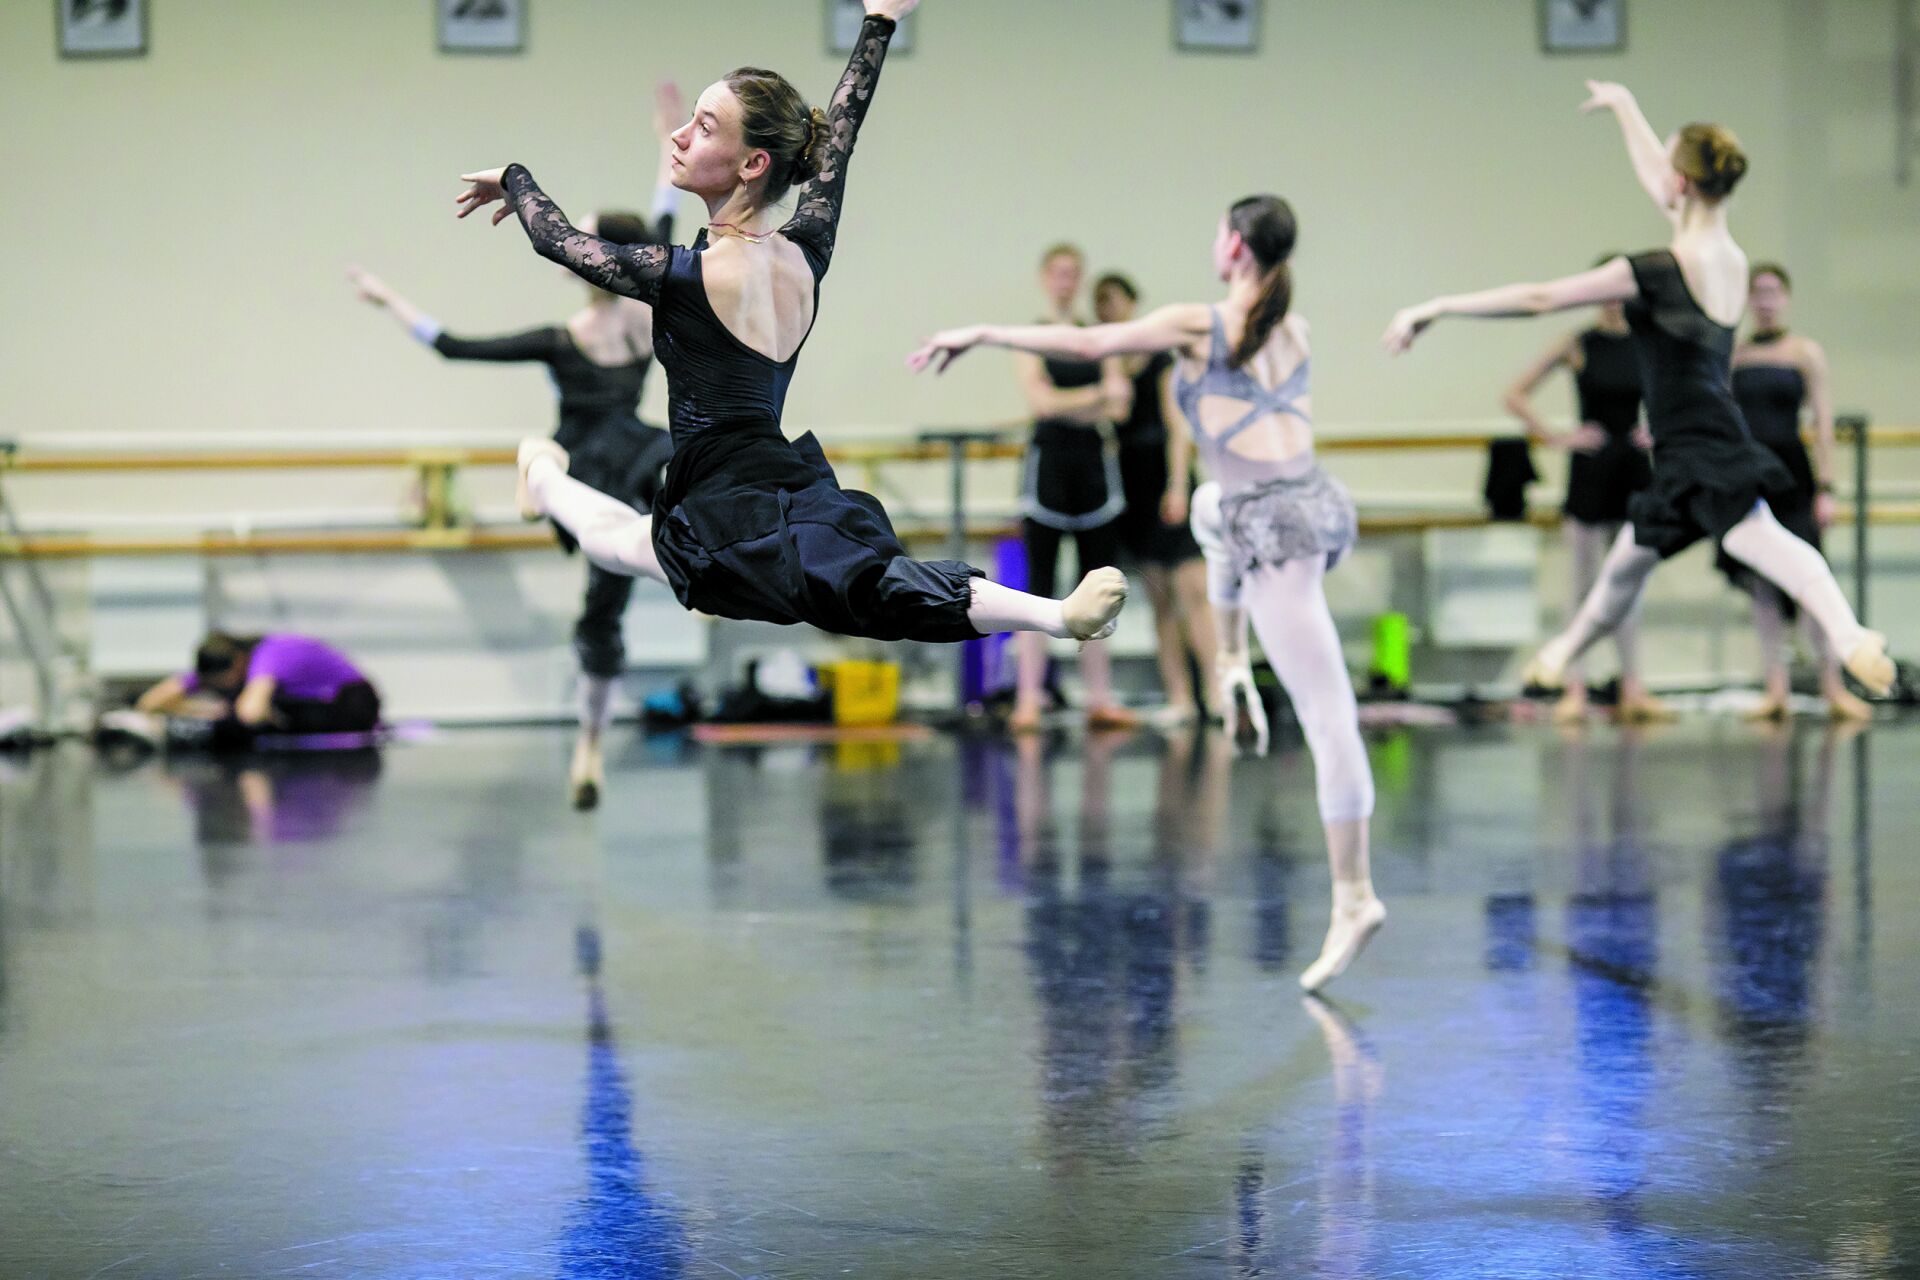 С чего начинается каждый рабочий день артиста балета?